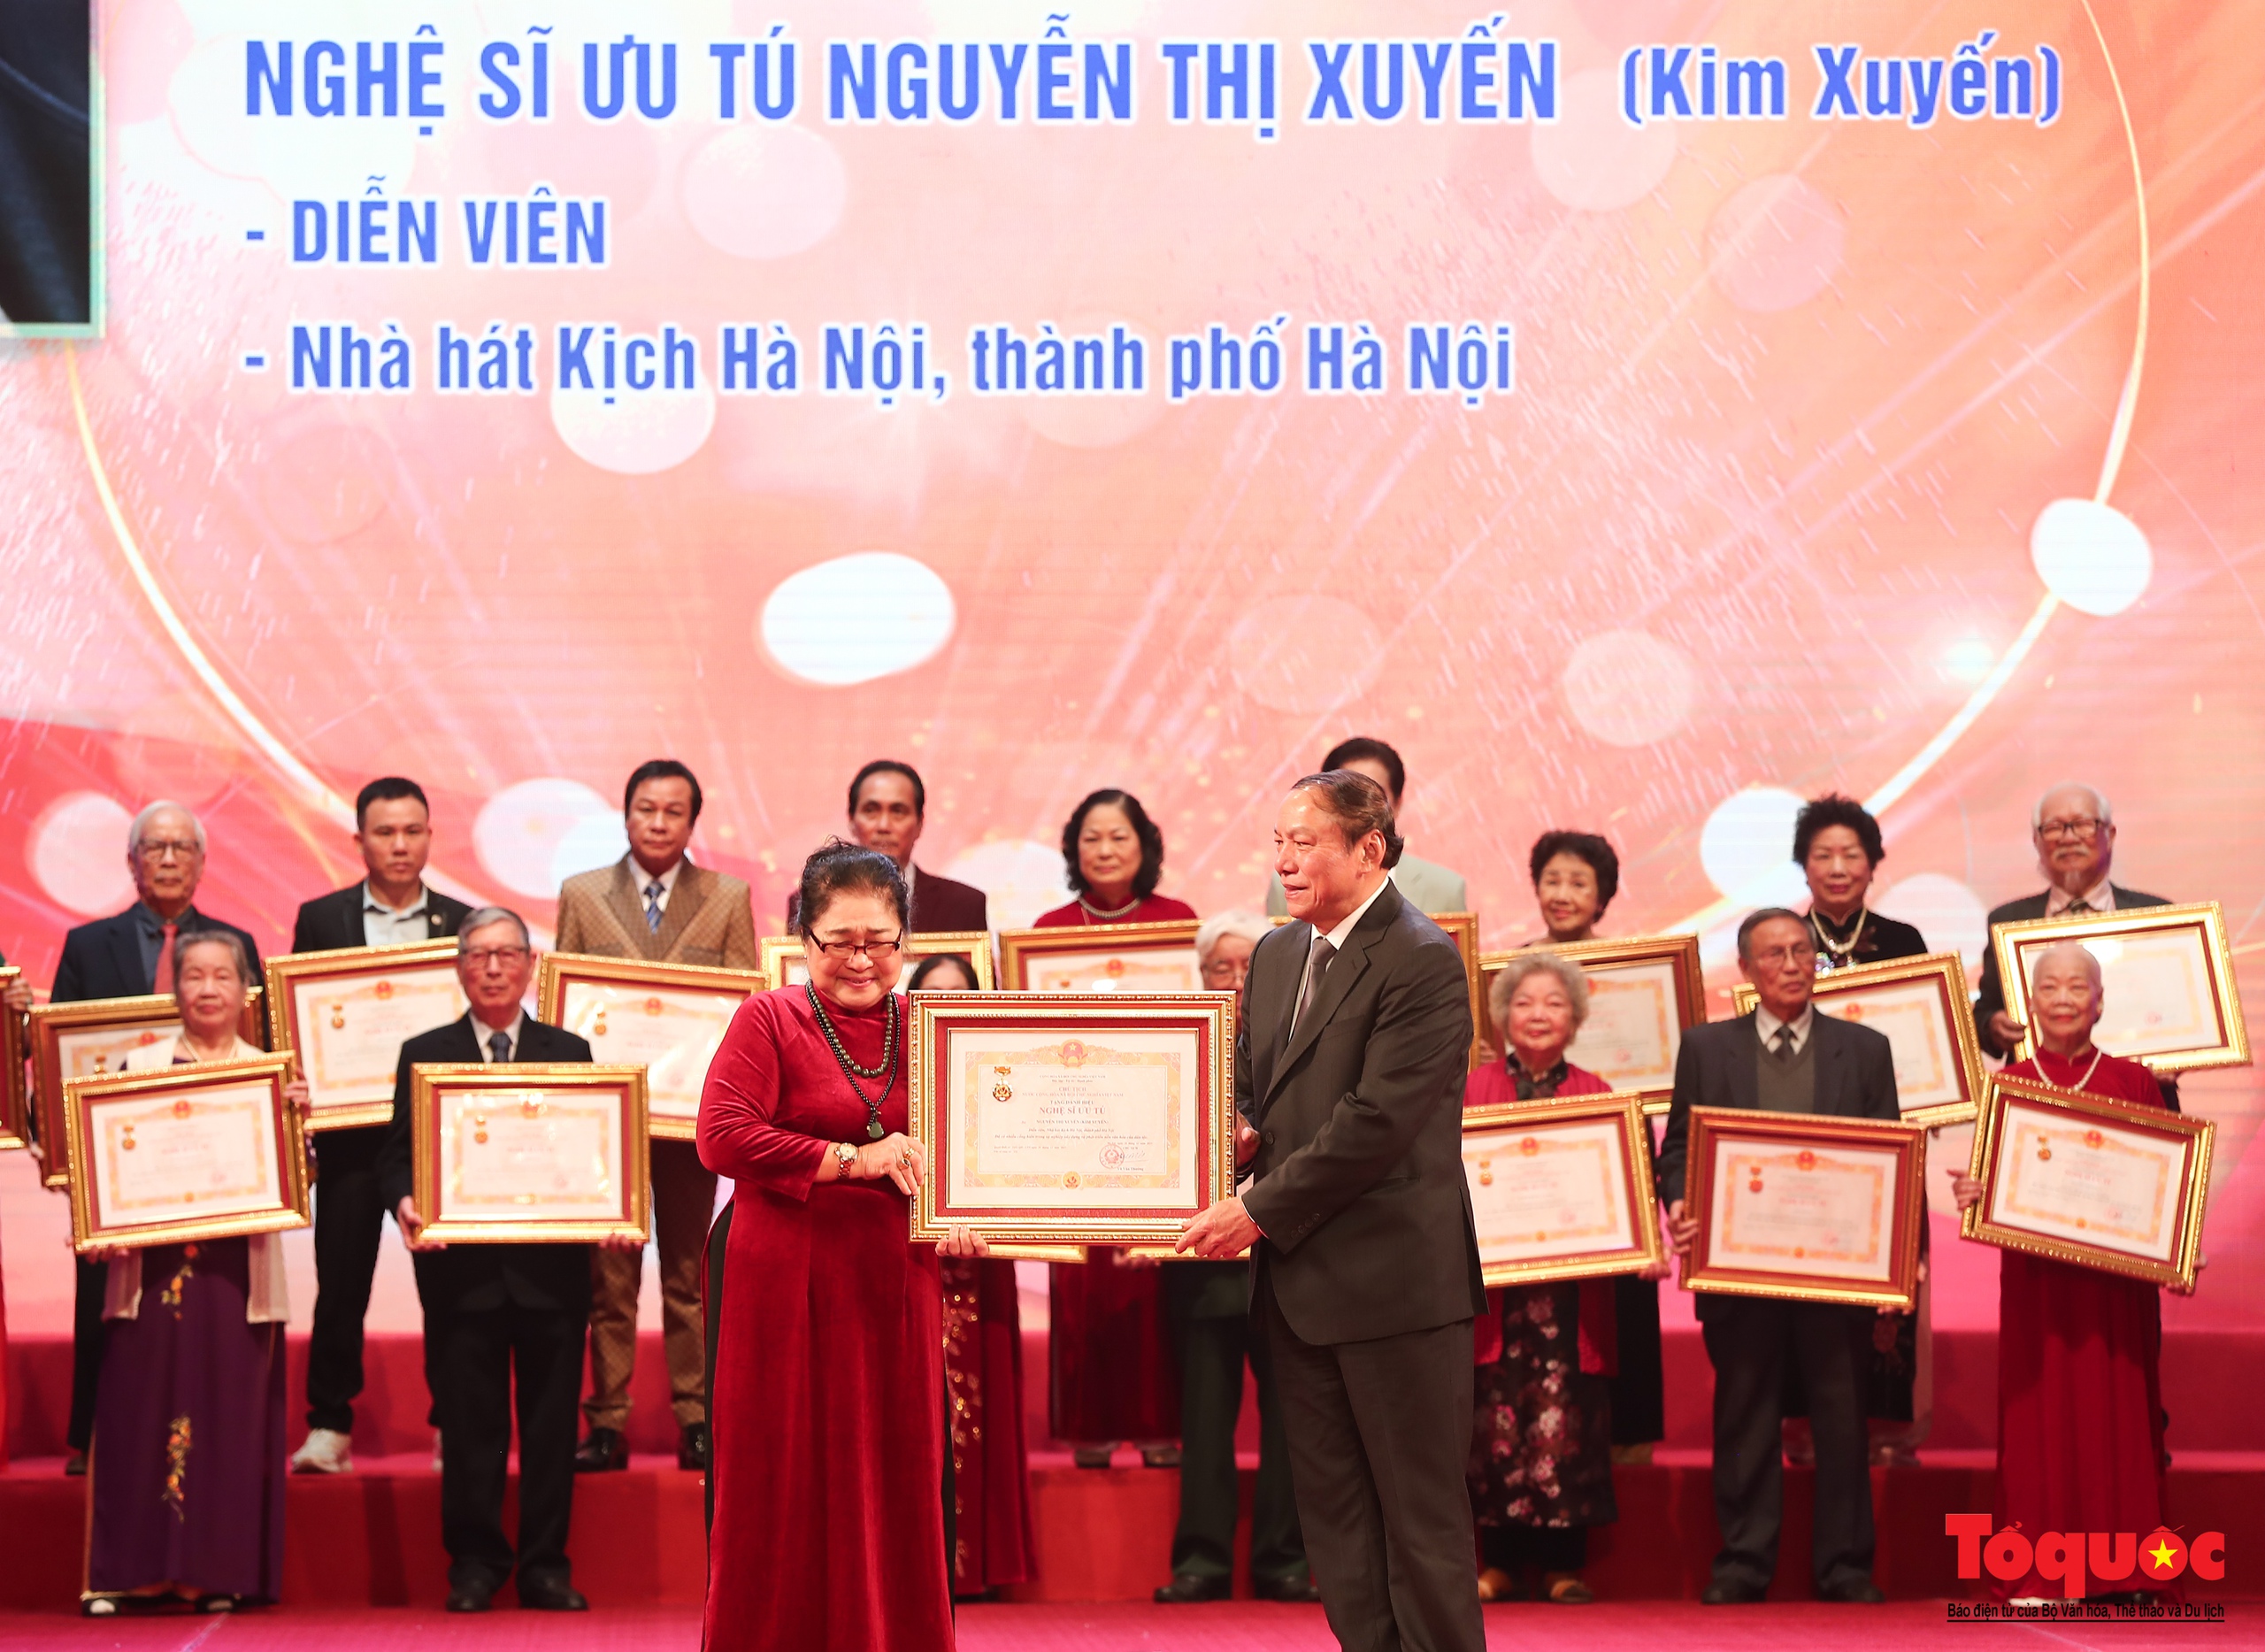 Toàn cảnh Lễ trao tặng danh hiệu Nghệ sĩ Nhân dân, Nghệ sĩ Ưu tú lần thứ 10 - Ảnh 22.